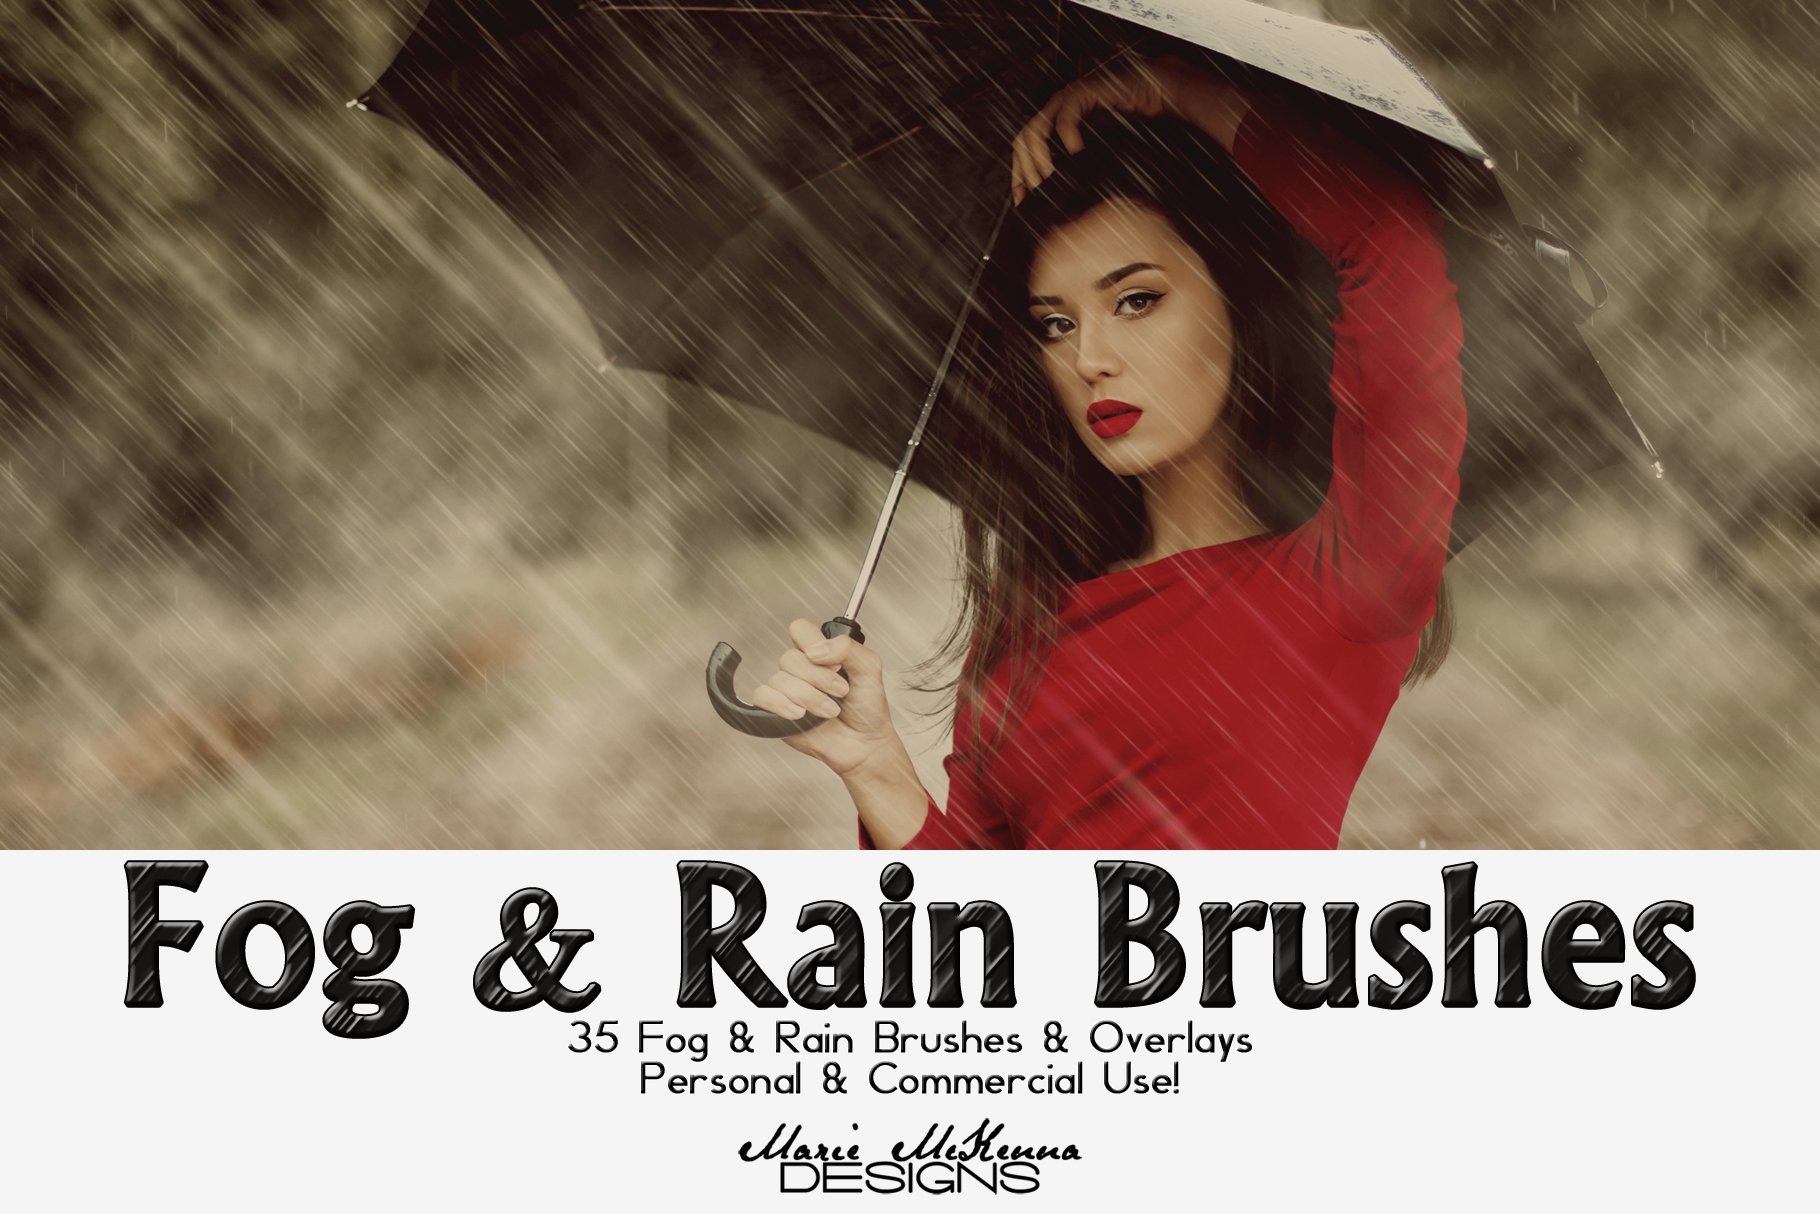 Fog & Rain Brushes & Overlayscover image.